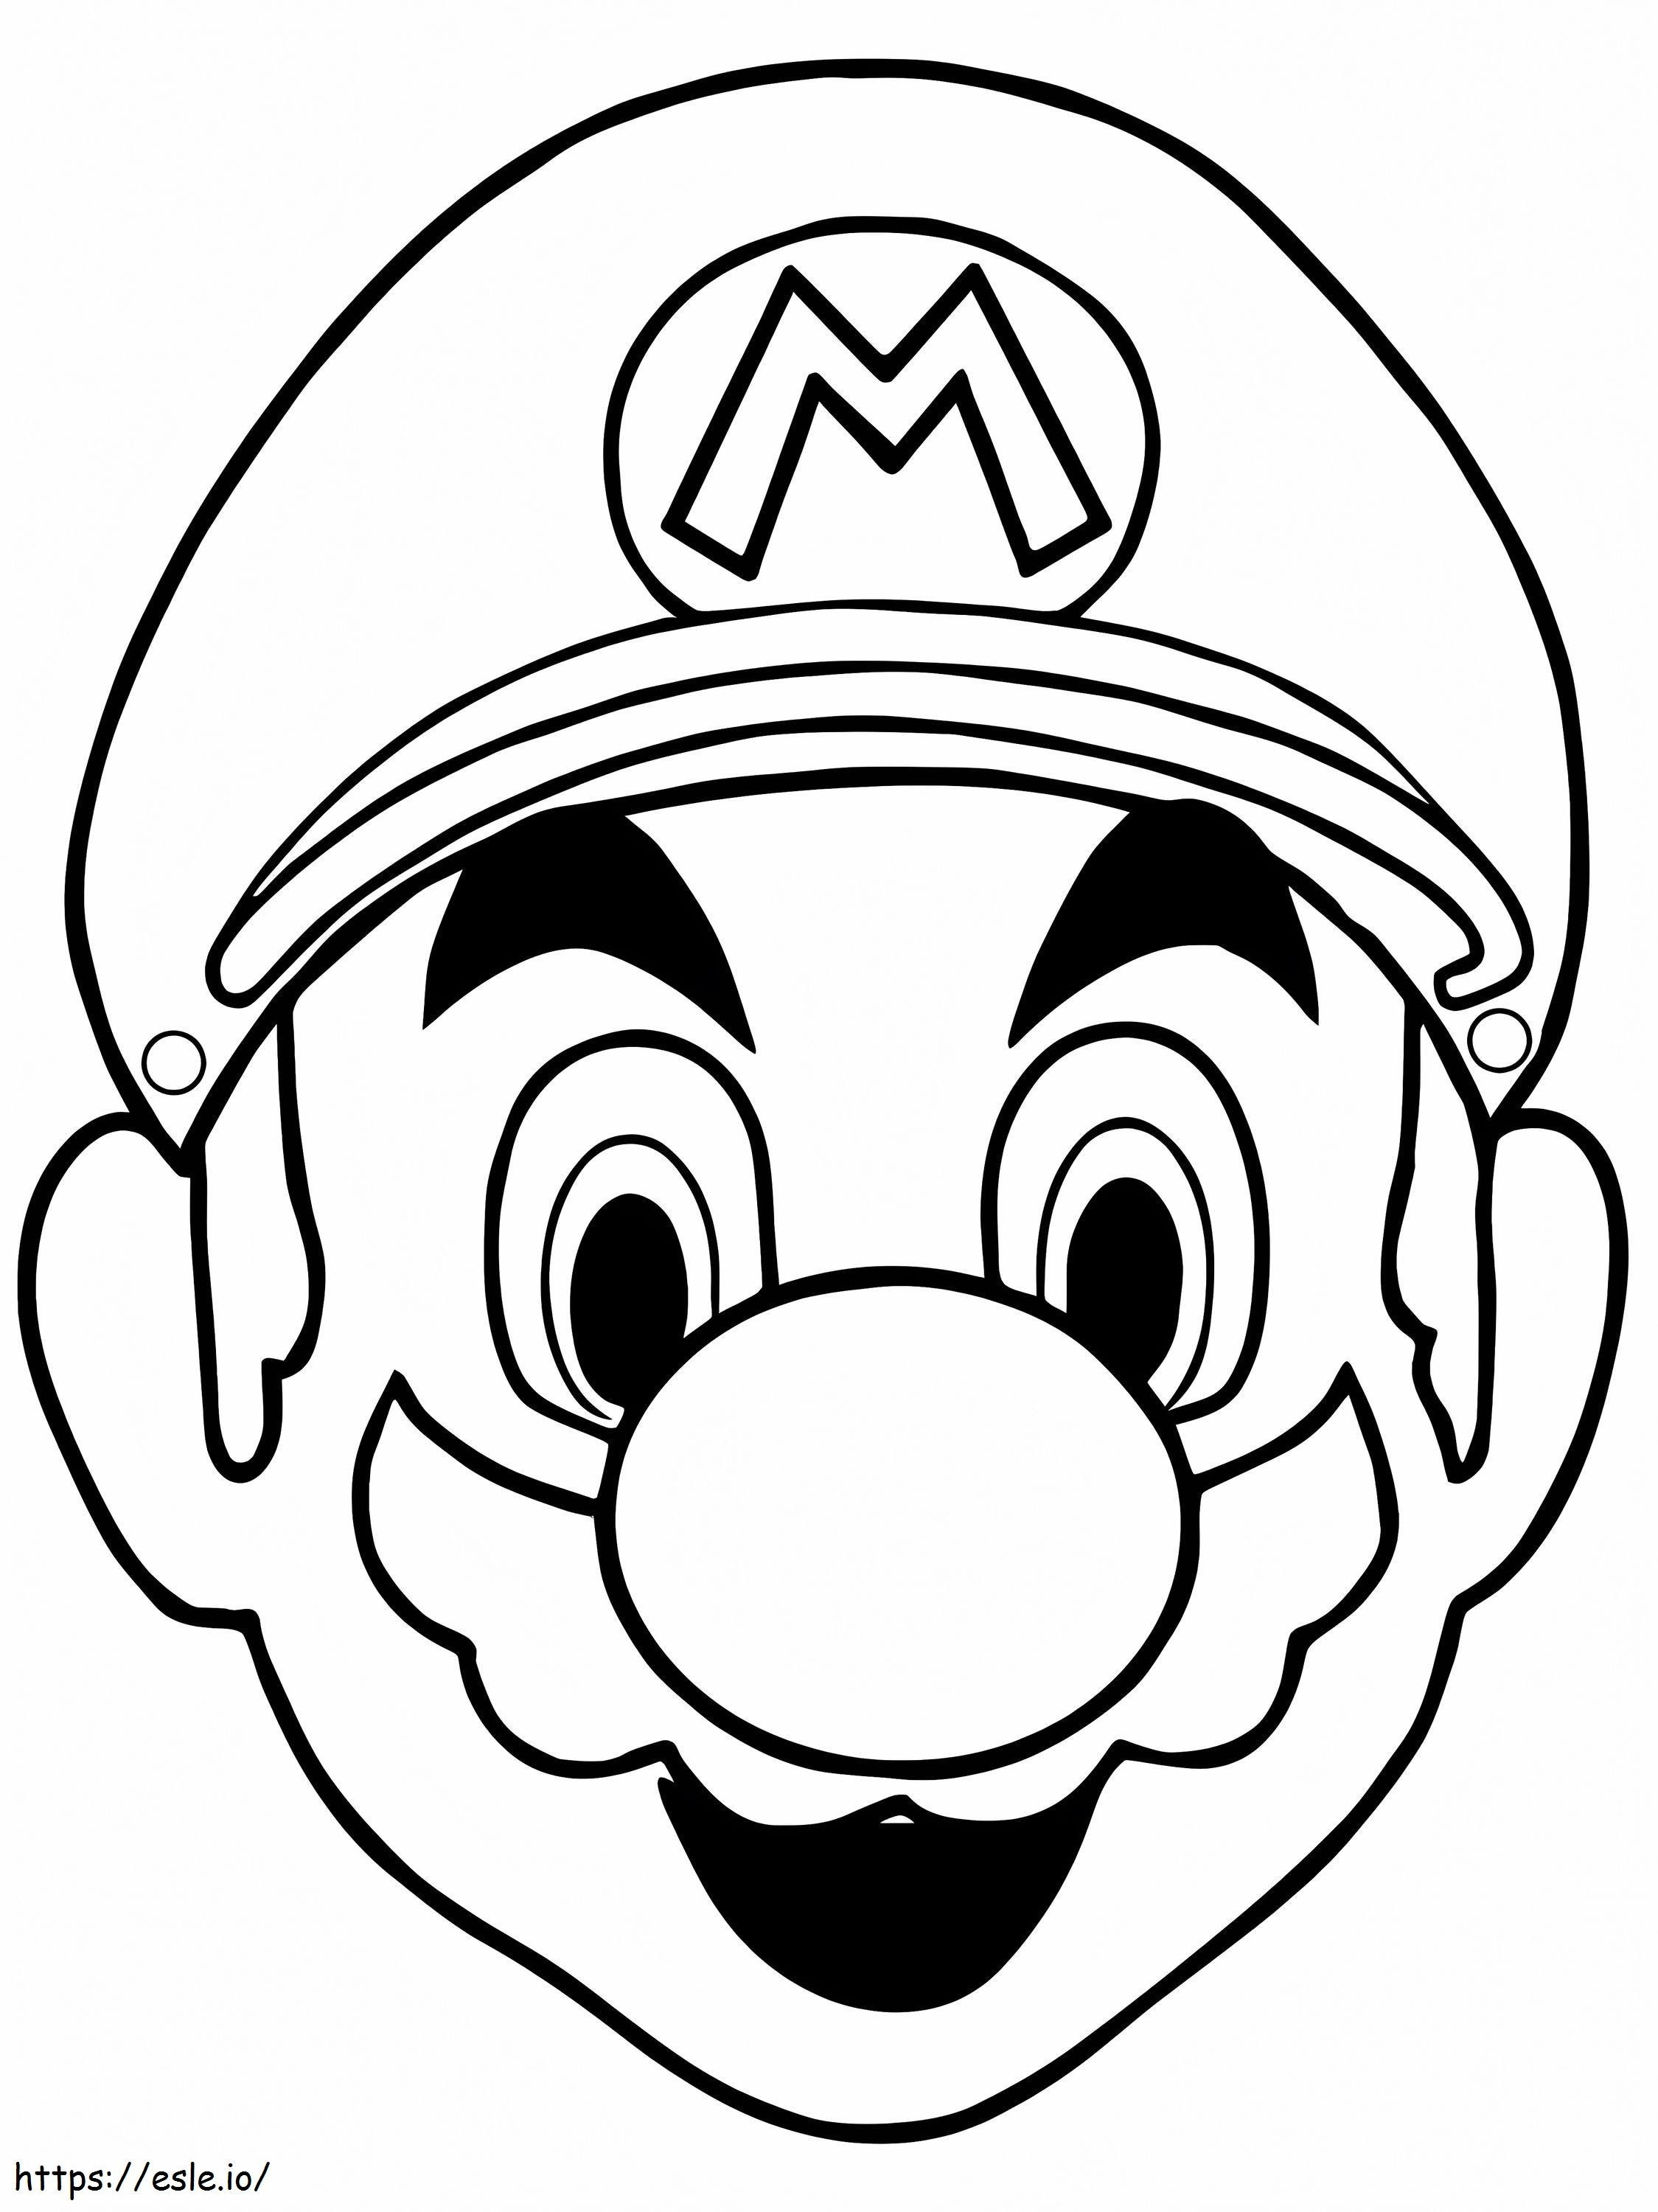 Gesicht von Mario ausmalbilder